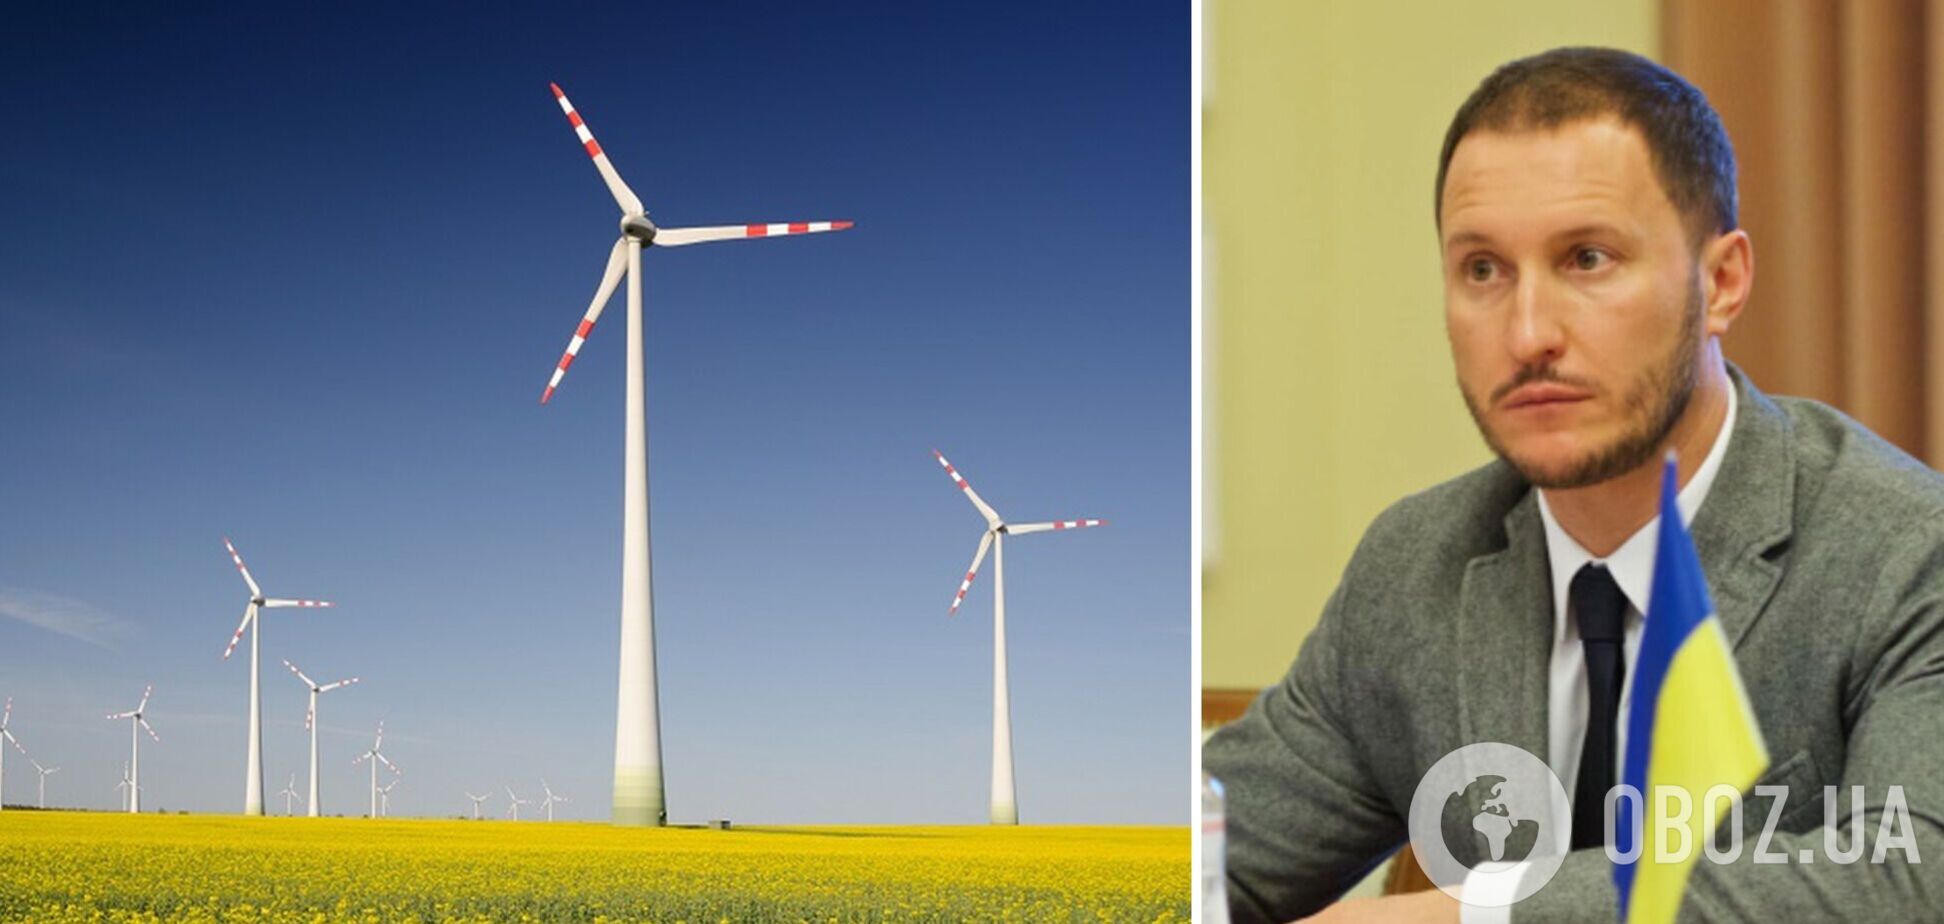 Ветроэнергетика может вывести Украину в лидеры использования ВИЭ – Минэнерго